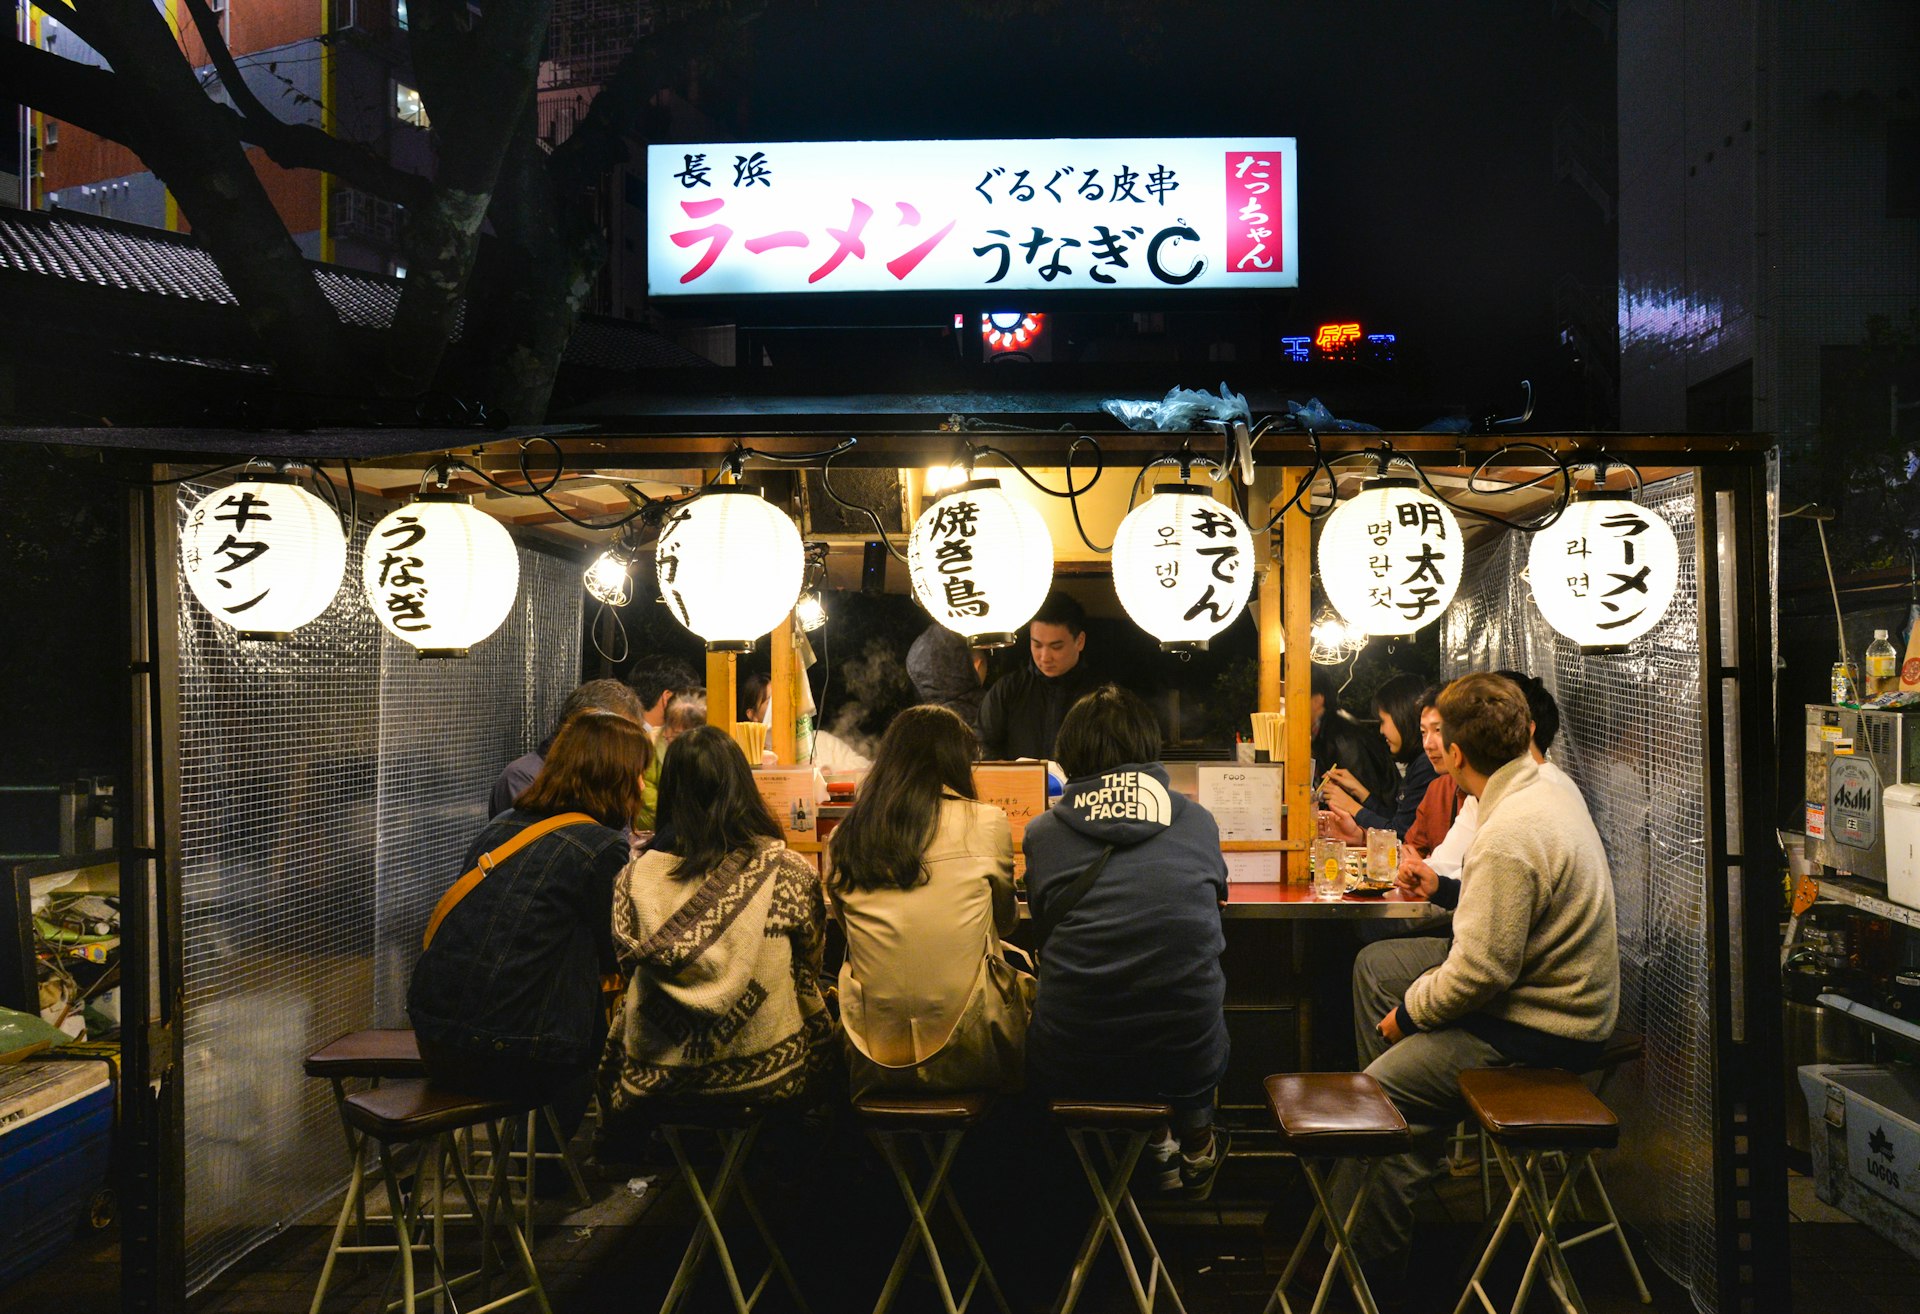 Diners at a counter at a yatai, Canal City, Fukuoka, Japan